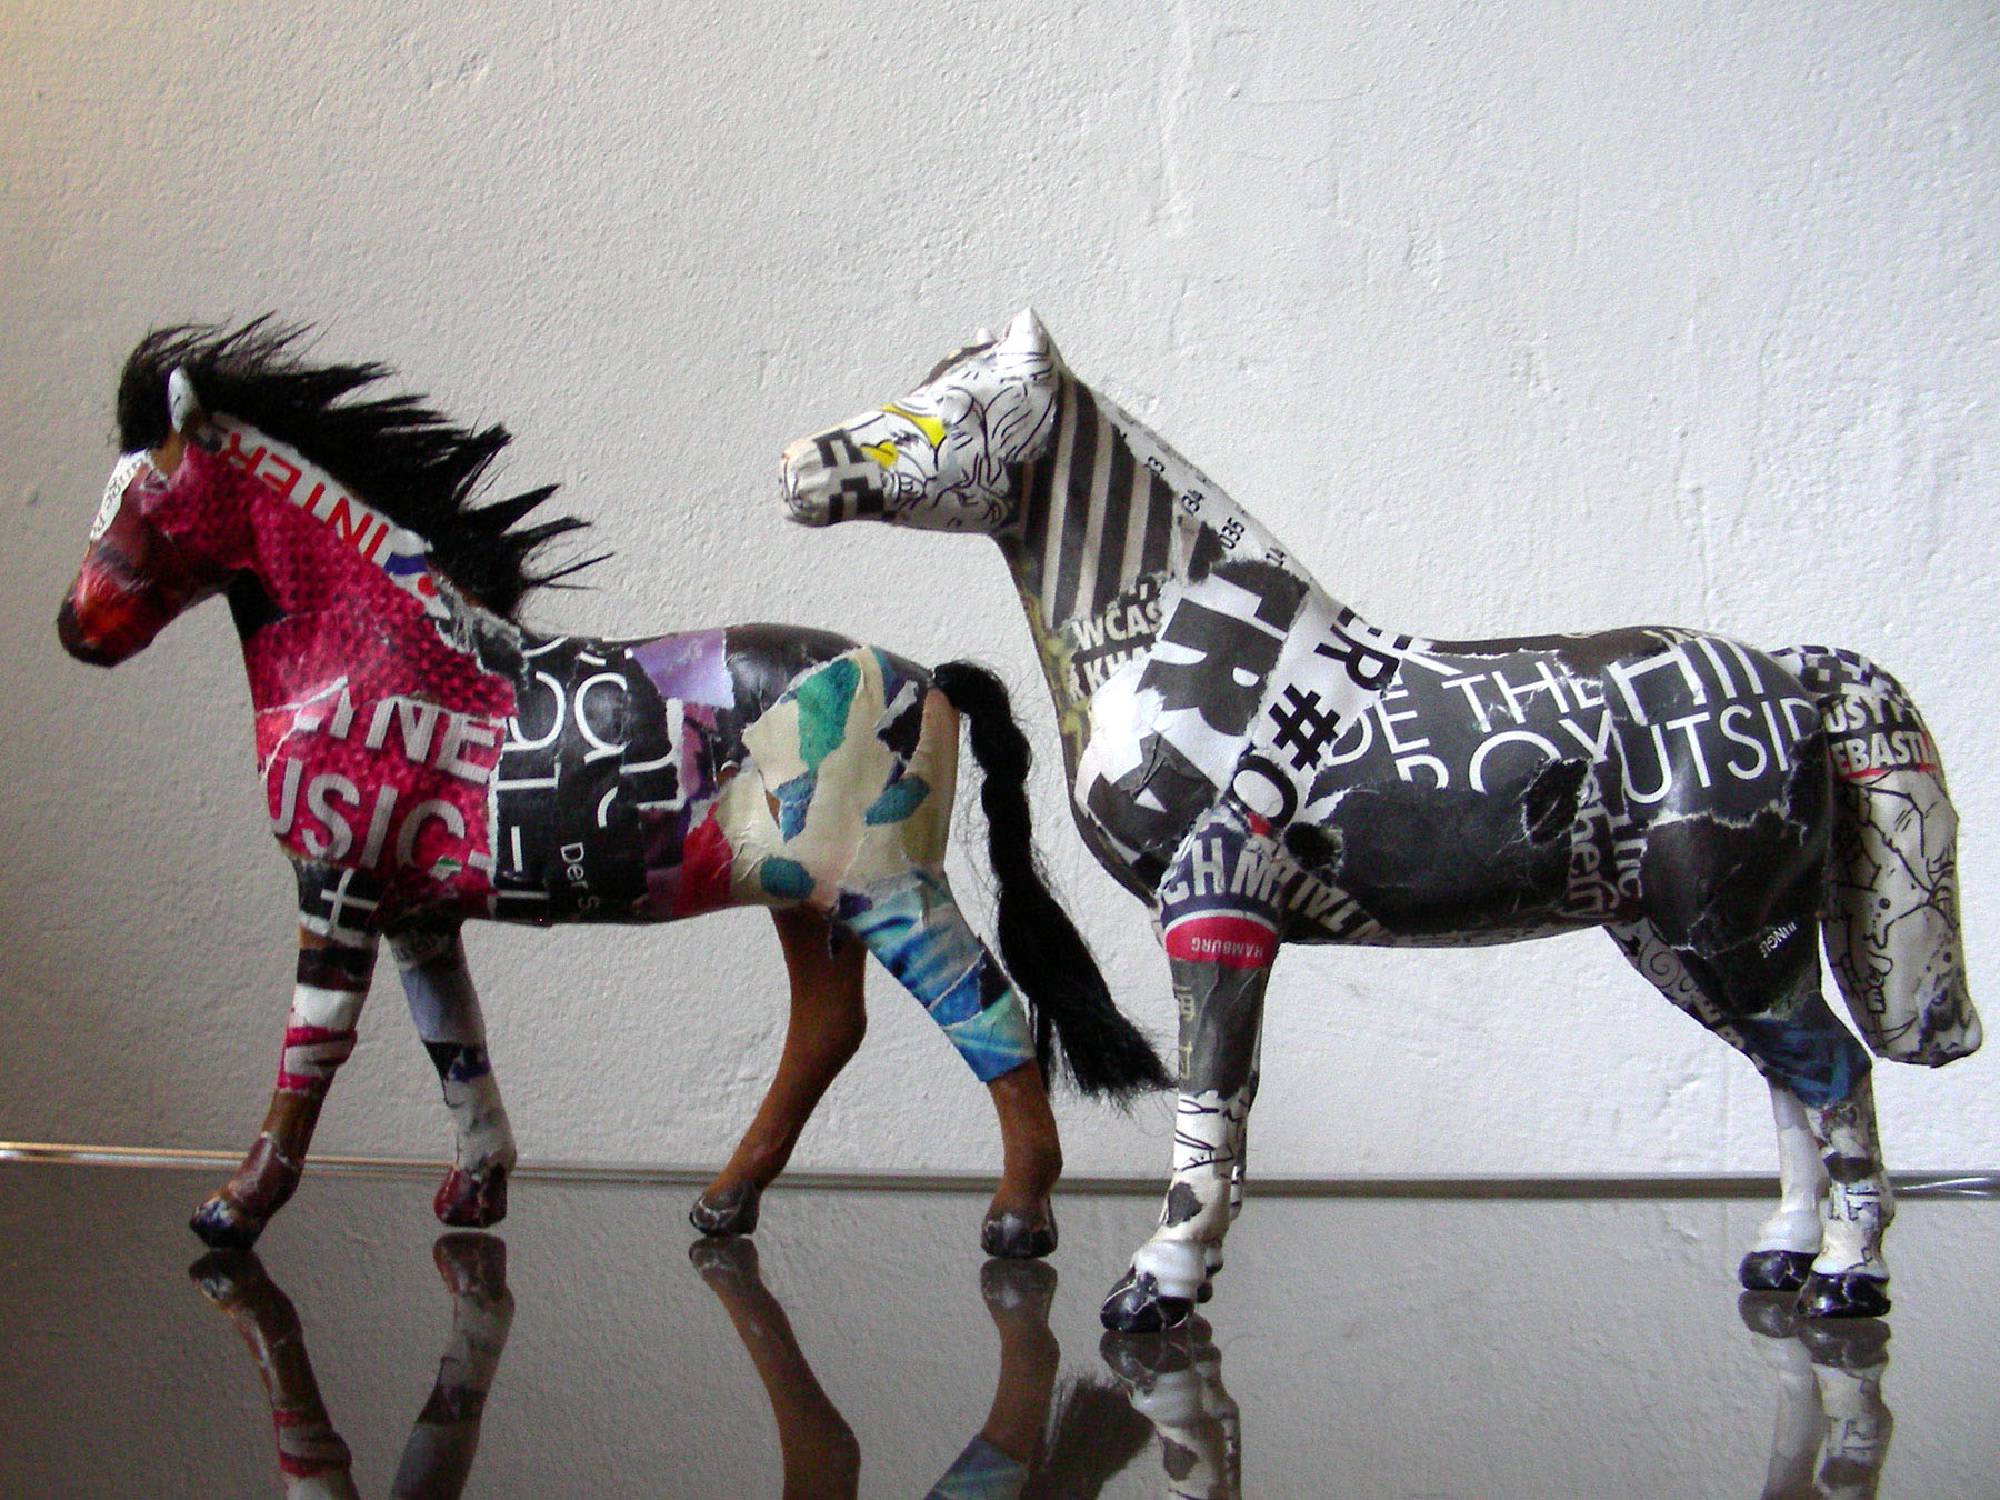 pferd horse figur collage